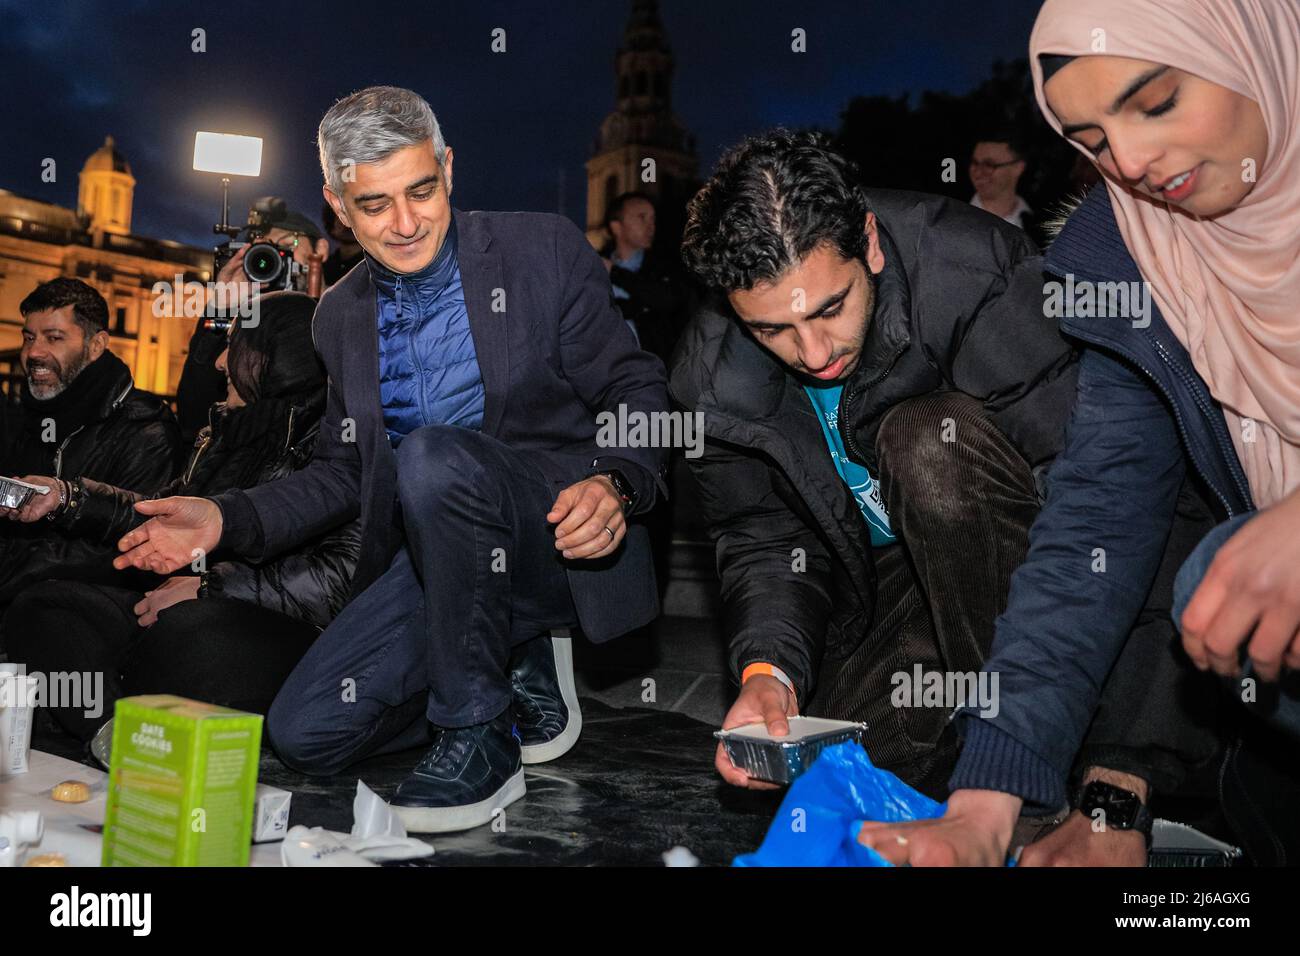 Londres, Reino Unido, 29th de abril de 2022. El alcalde de Londres Sadiq Khan ayuda a distribuir las comidas por las filas de comensales sentados. El Iftar Abierto más grande del Reino Unido, organizado por el Proyecto Ramadán Tent, reúne a personas de todas las comunidades para compartir un Iftar (cena) para romper rápidamente durante lo que es ahora la última semana del mes sagrado islámico del Ramadán. El evento está asistido por Sadiq Khan, Alcalde de Londres, y alrededor de 2.000 miembros del público. Crédito: Imageplotter/Alamy Live News Foto de stock